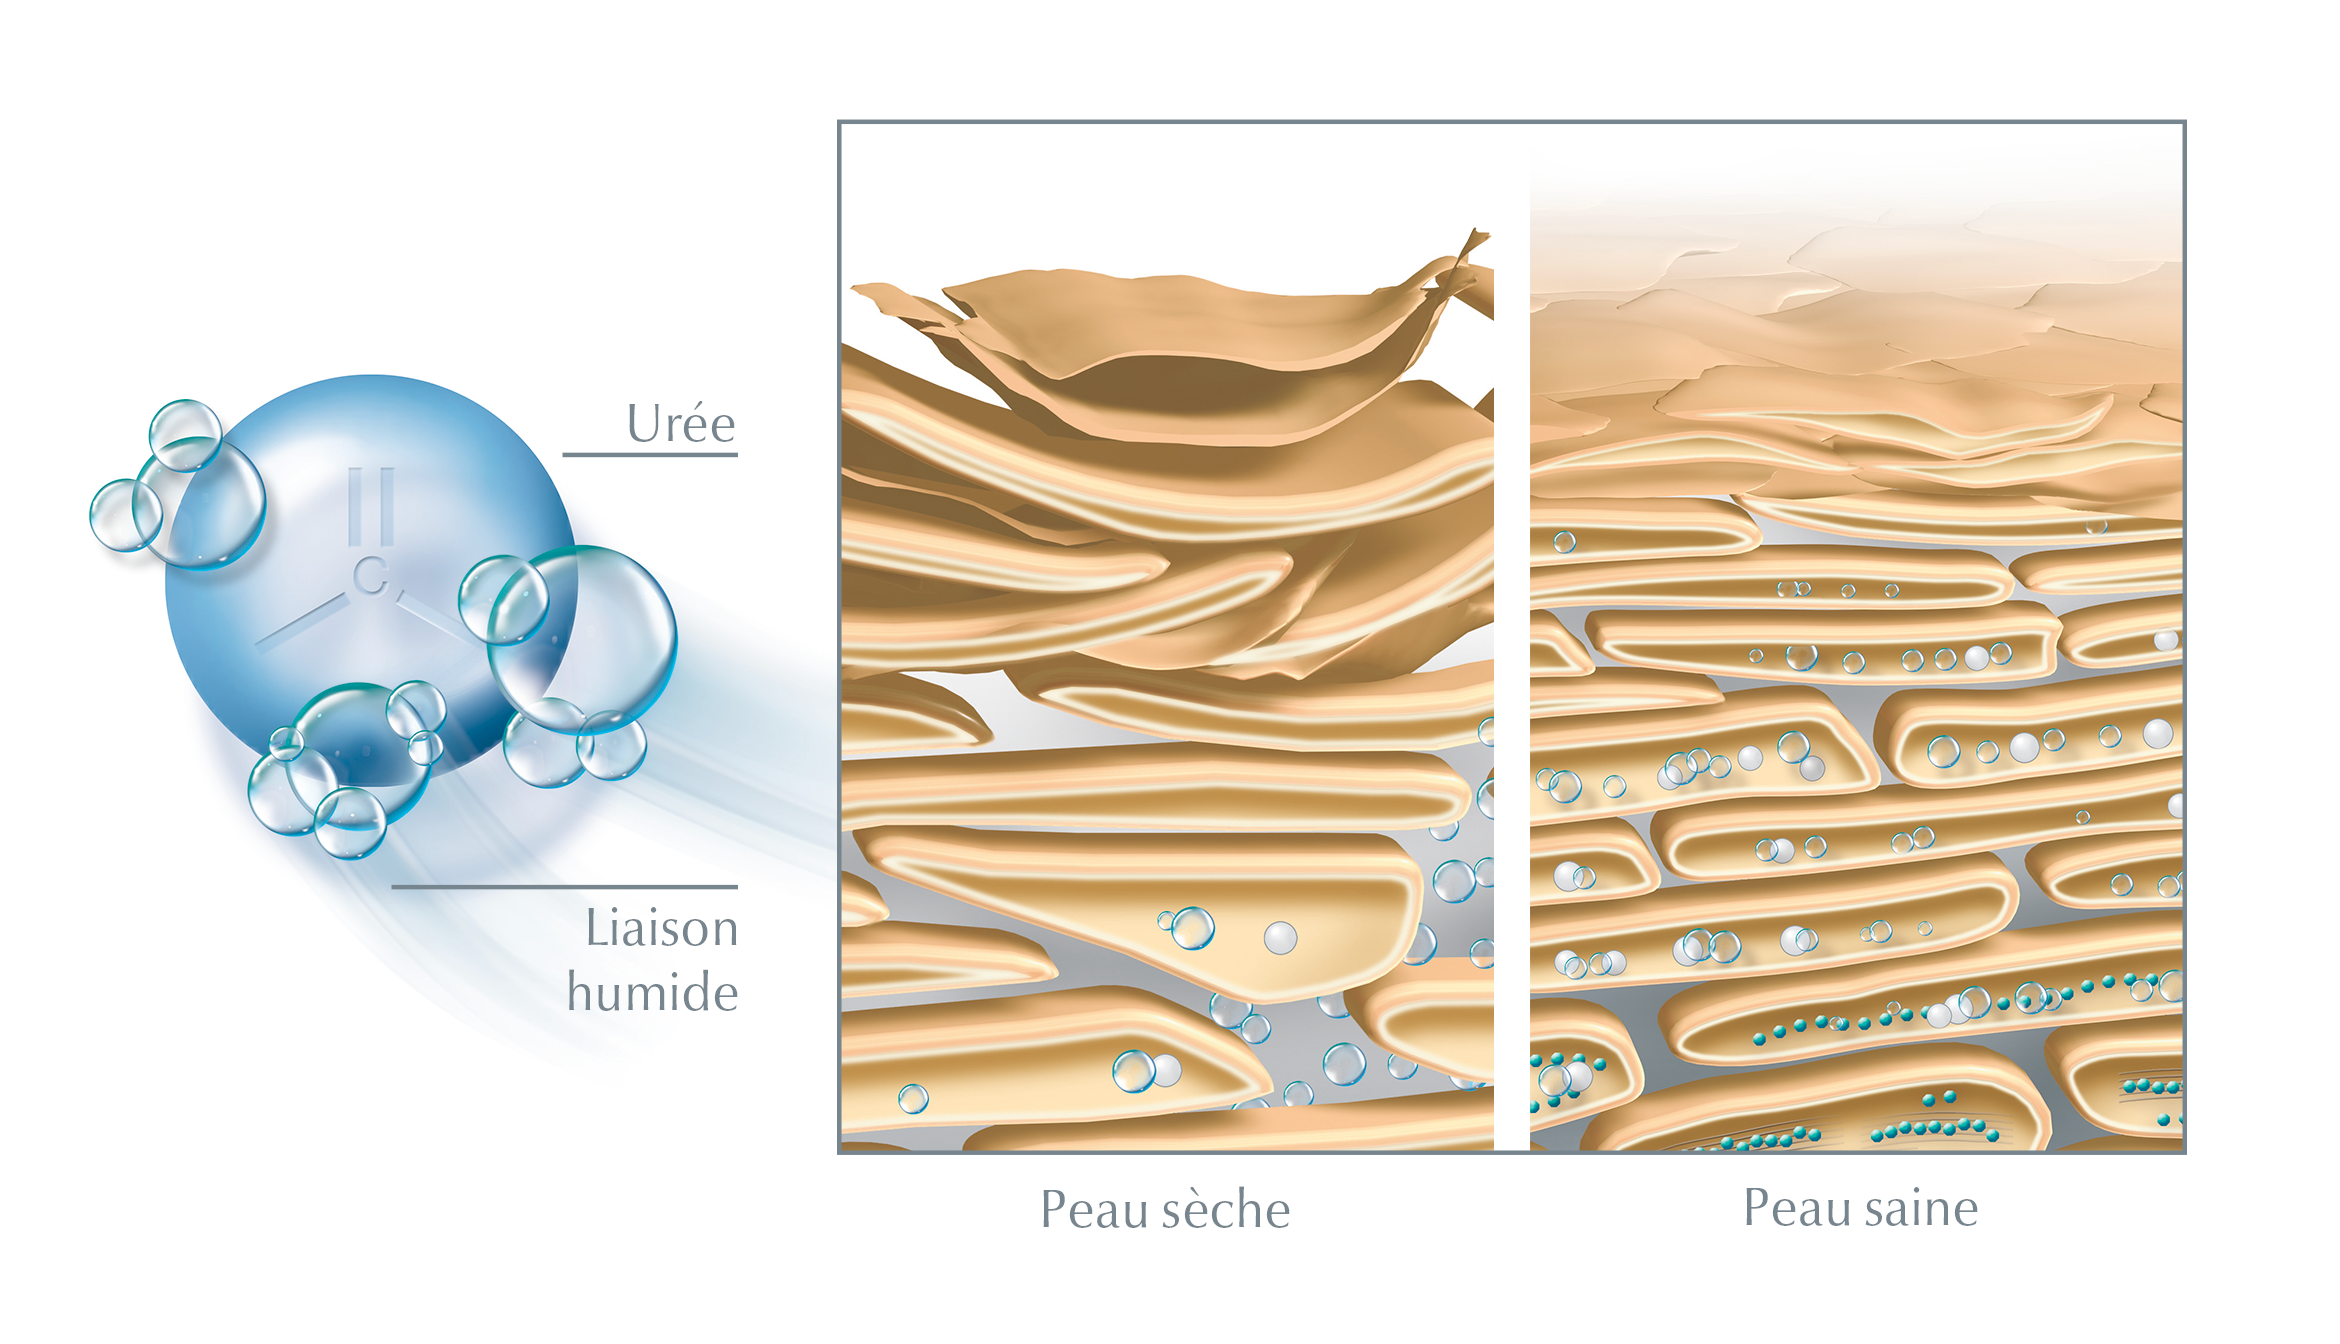 L'urée lie l'eau dans les couches superficielles de la peau et, en même temps, rompt les connexions entre les cellules mortes de la peau - ce qui favorise la desquamation et assure une surface de peau plus lisse.